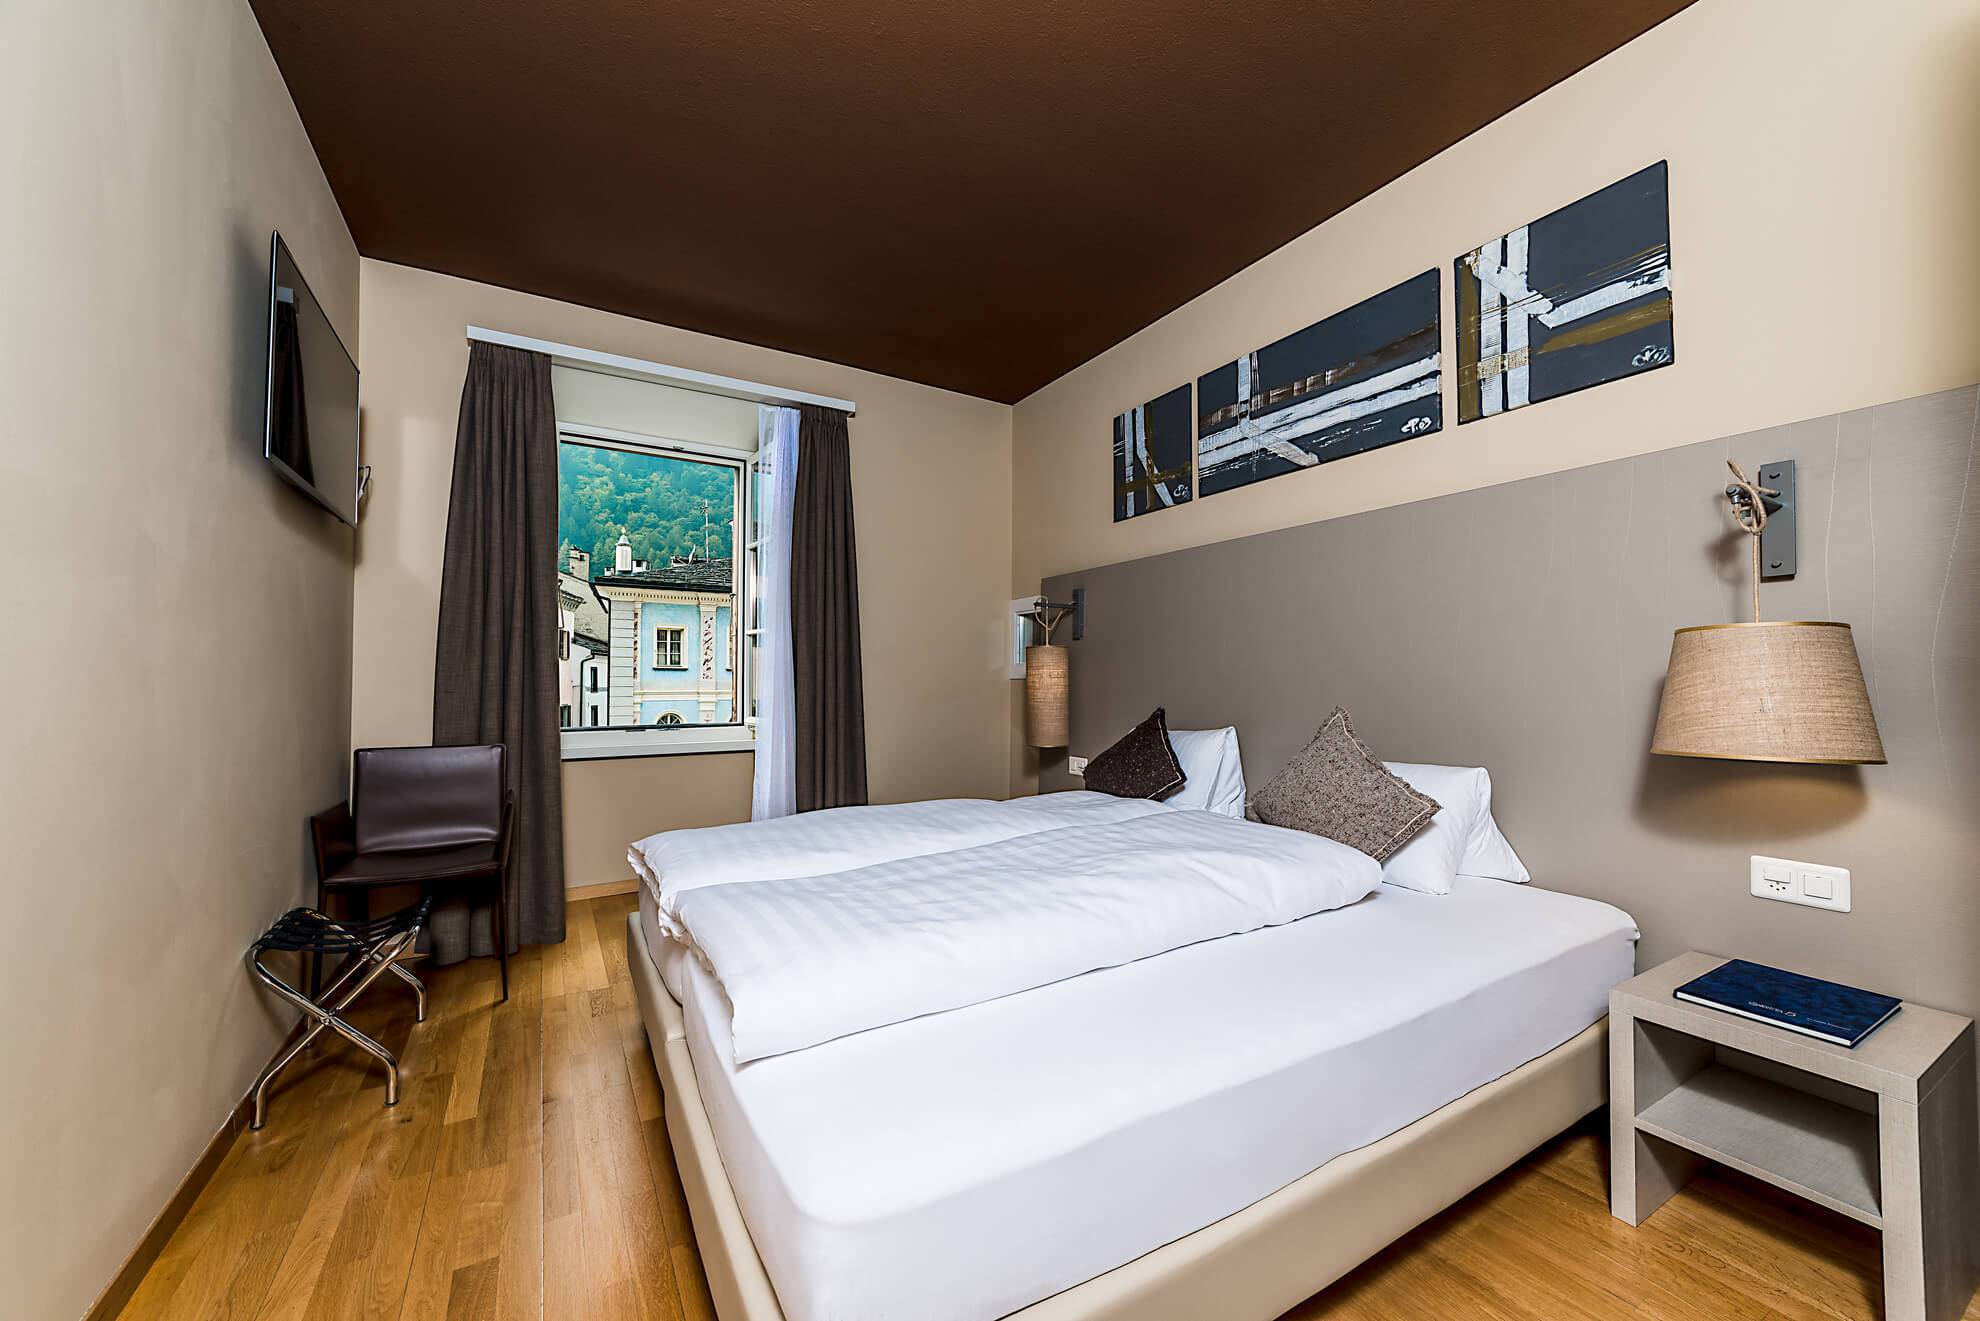 Hotel a Poschiavo: camera doppia spaziosa ed accogliente